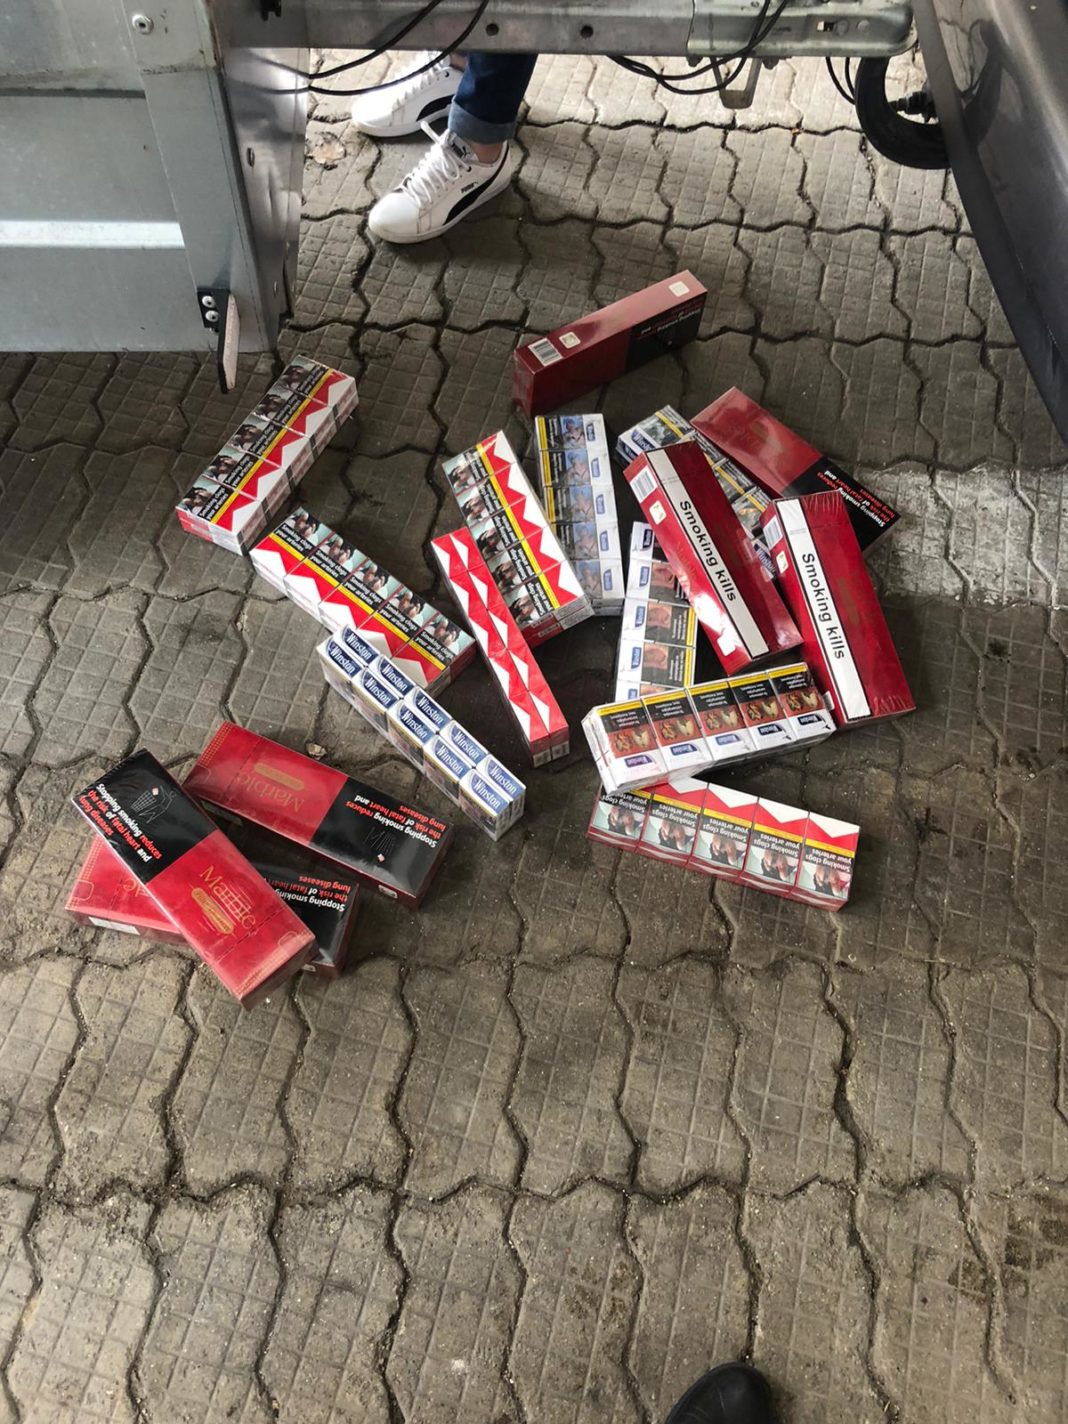 Poliţiştii craioveni cercetează două persoane din municipiu pentru contrabandă cu țigări, după ce au fost găsite în timp ce le vindeau